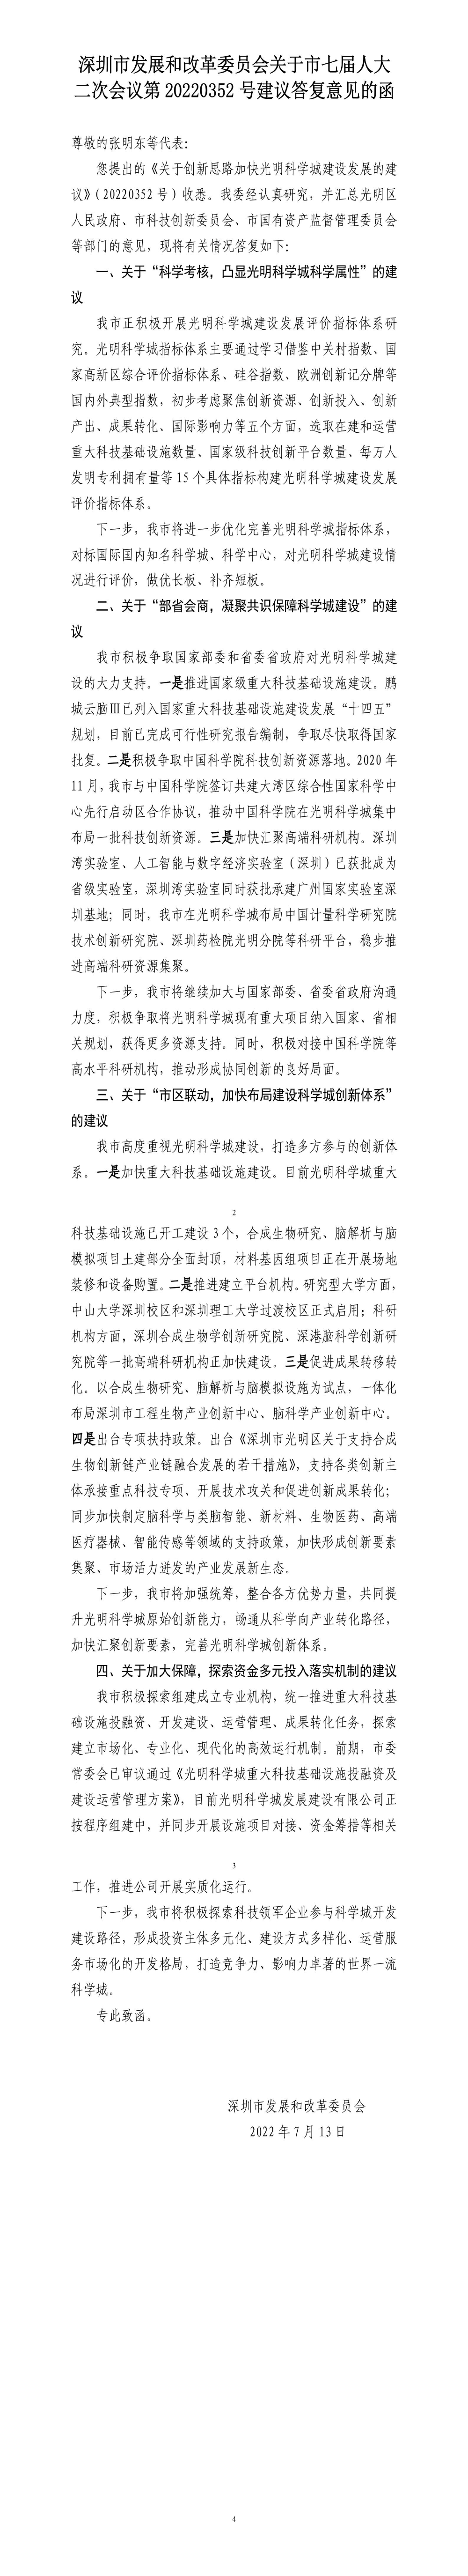 深圳市发展和改革委员会关于市七届人大二次会议第20220352号建议答复意见的函.jpg